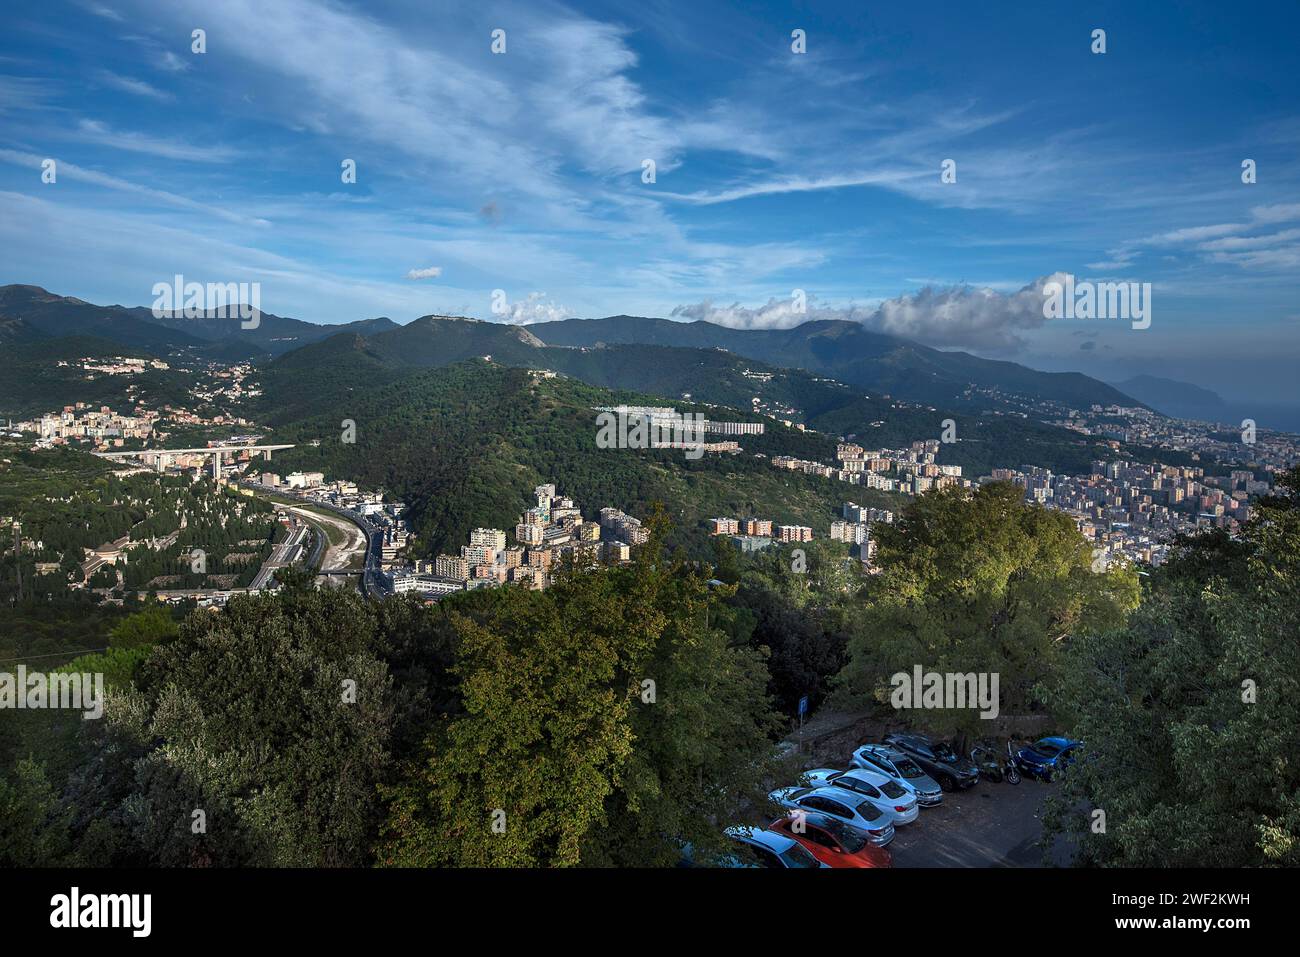 Vista dei quartieri di Sampierdarena e Cornigliano e del restaurato Ponte Morandi sulla sinistra, crollo 2018, Genova, Italia Foto Stock